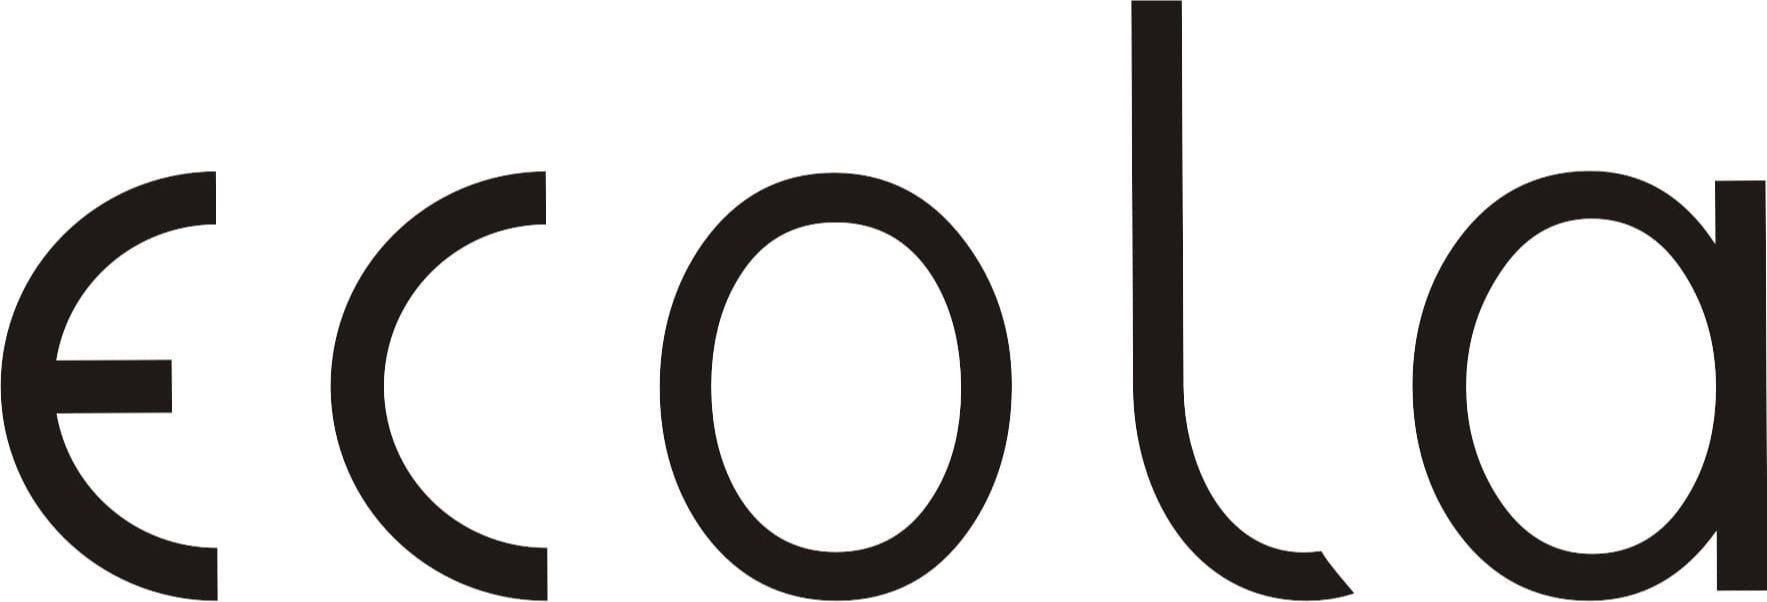  -  товары бренда Екола на официальном сайте интернет .